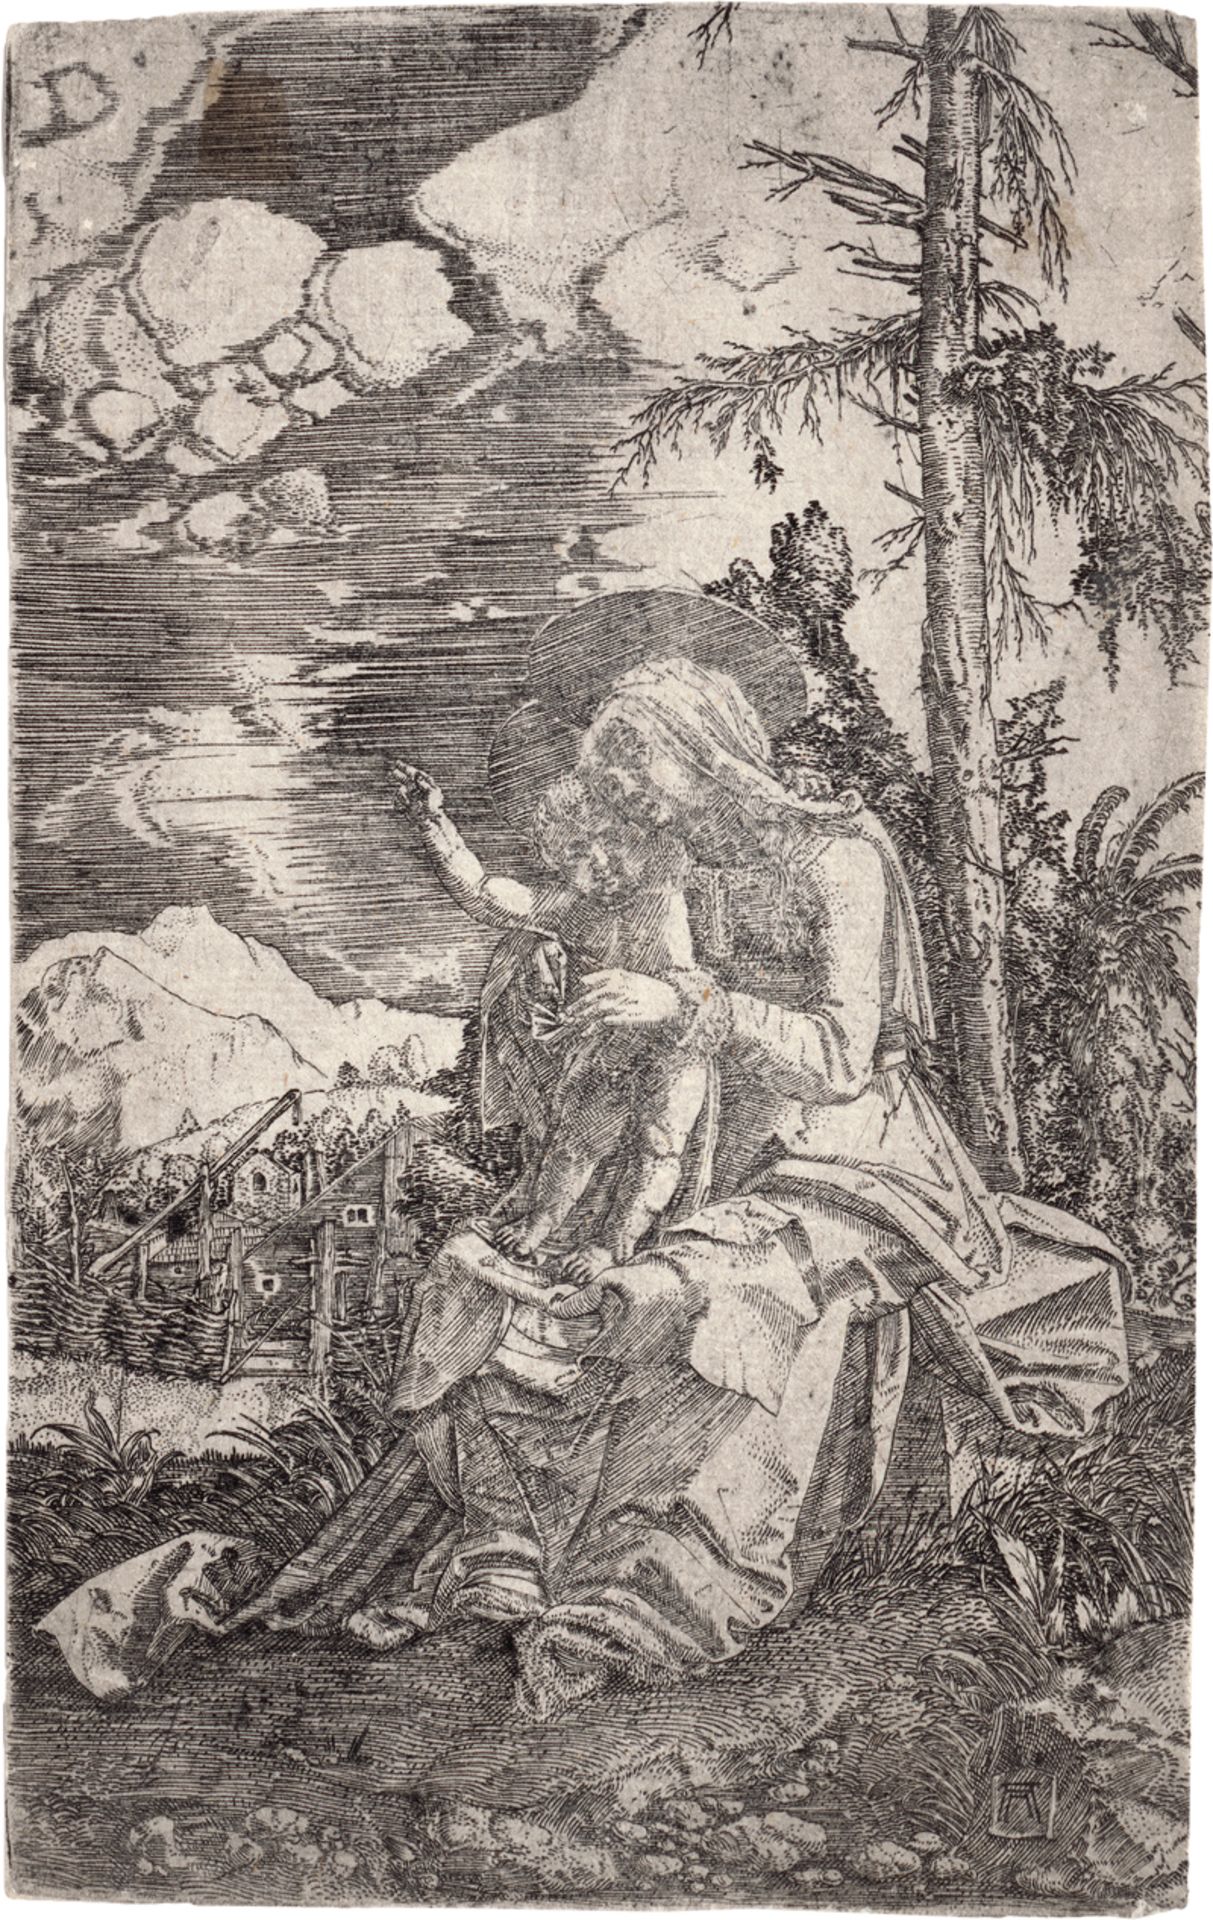 Altdorfer, Albrecht: Die Jungfrau mit dem segnenden Kind in einer Landschaft